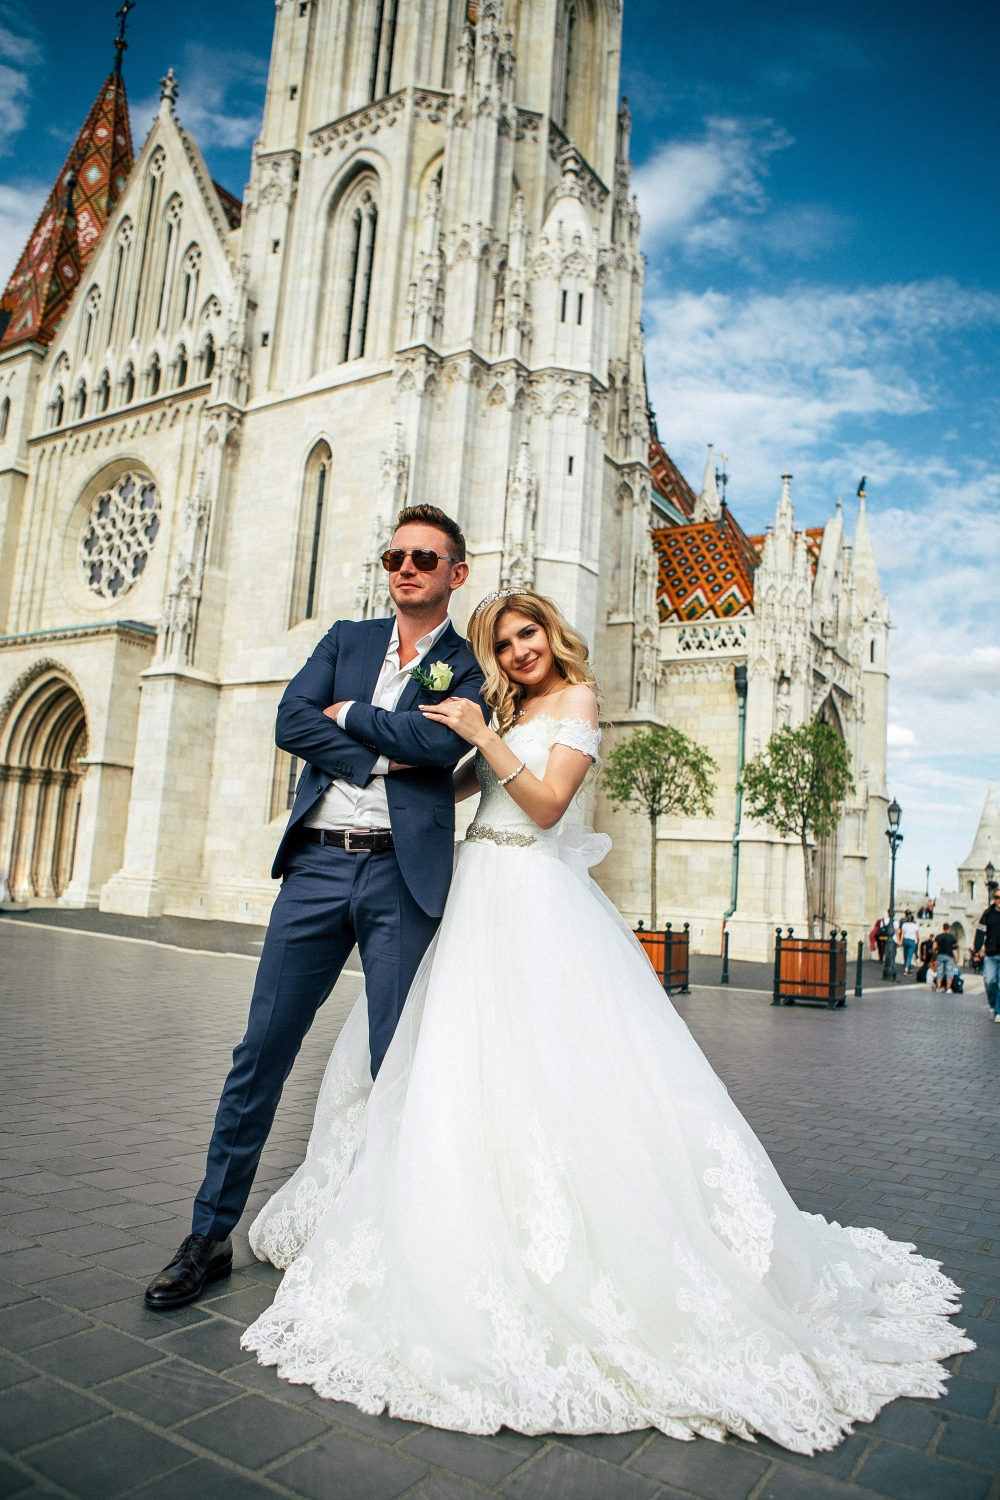 Свадьба в Европе, в Венгрии. Фото и видео сессия символической свадьбы прекрасной Анастасии и Ивана, которая состоялась 15 сентября 2017 года.